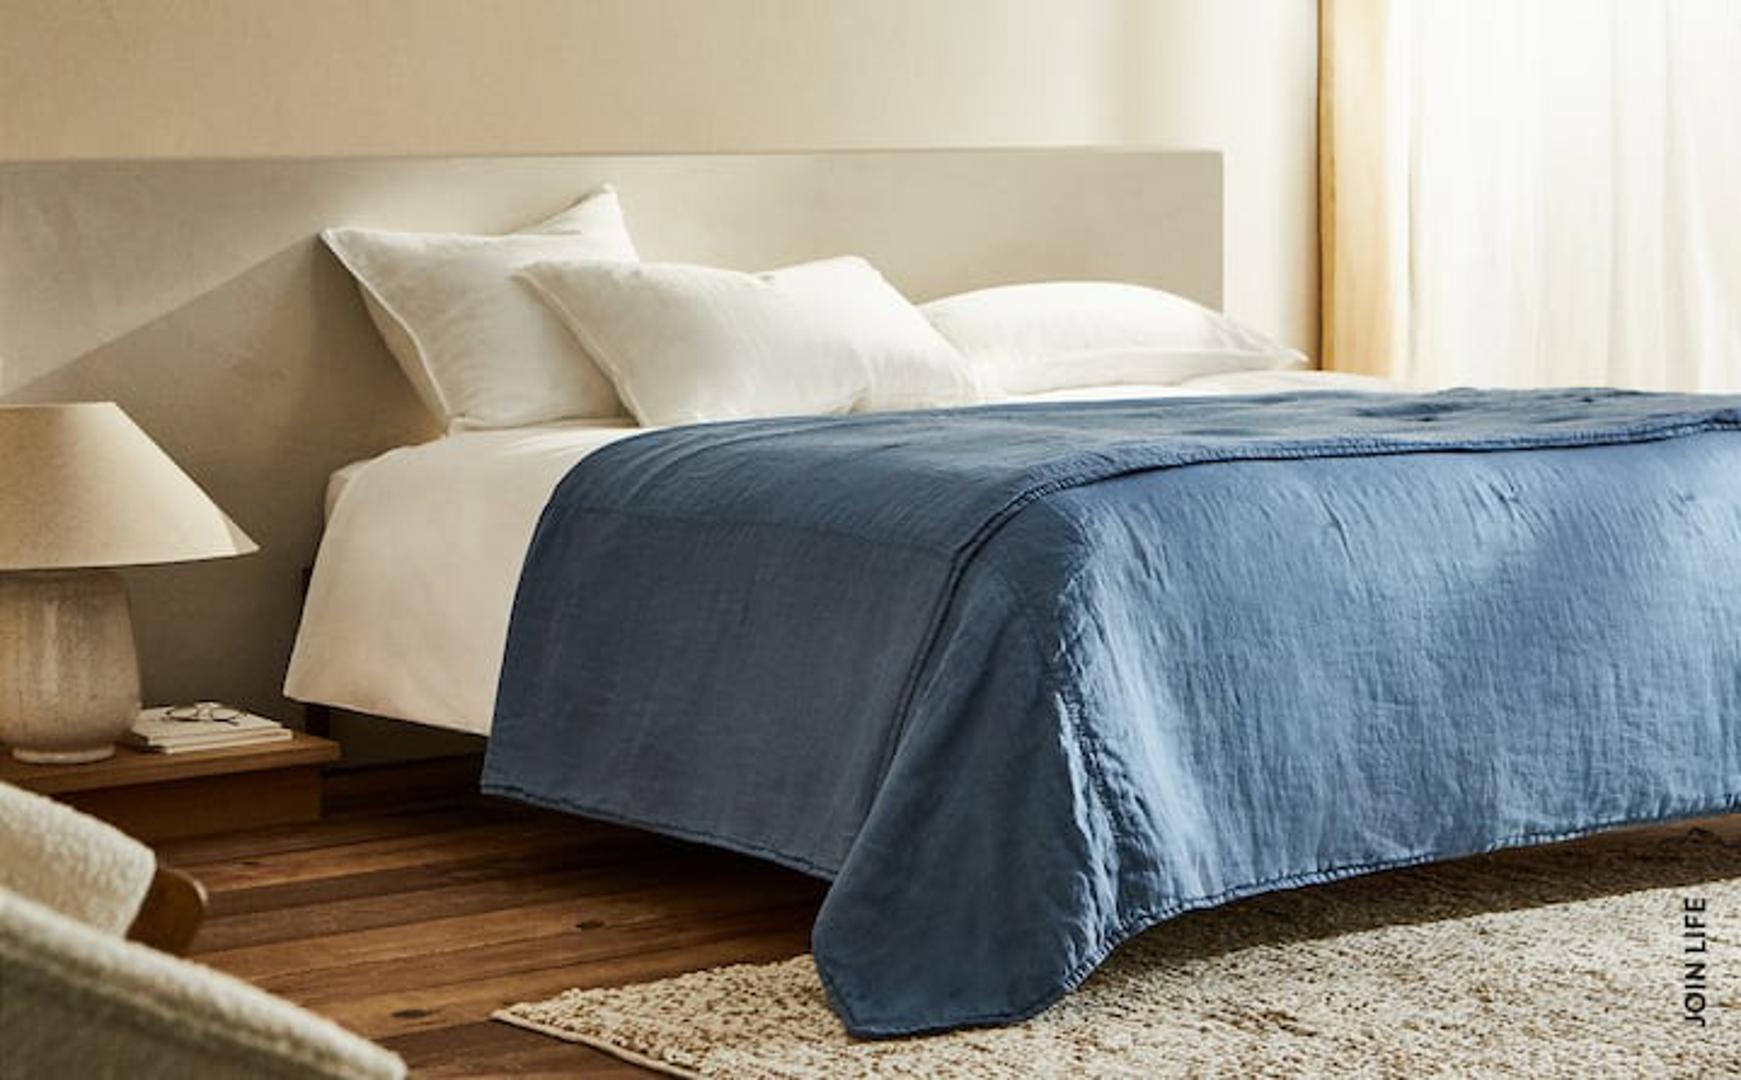 Investirajte u jedan zanimljiv prekrivač koji će spavaćoj sobi dati novi izgled